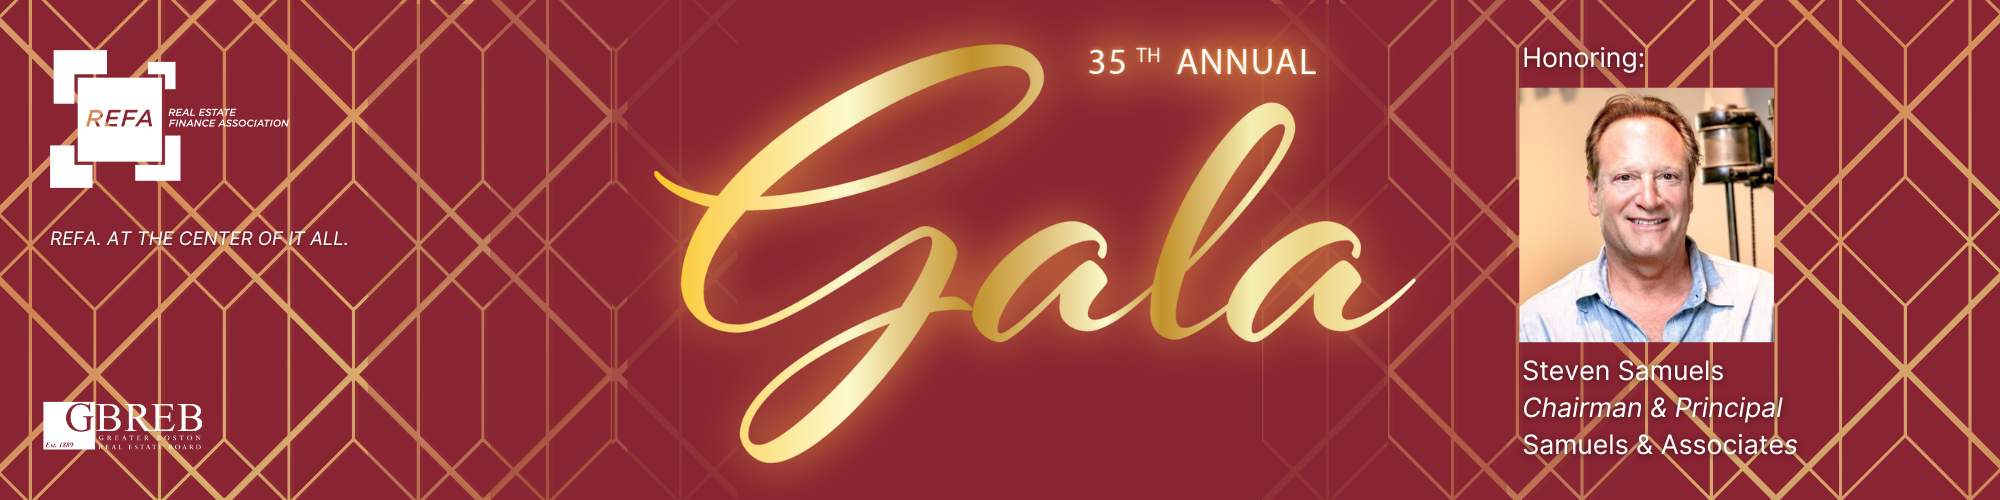 35th Annual REFA Gala honoring Steven Samuels